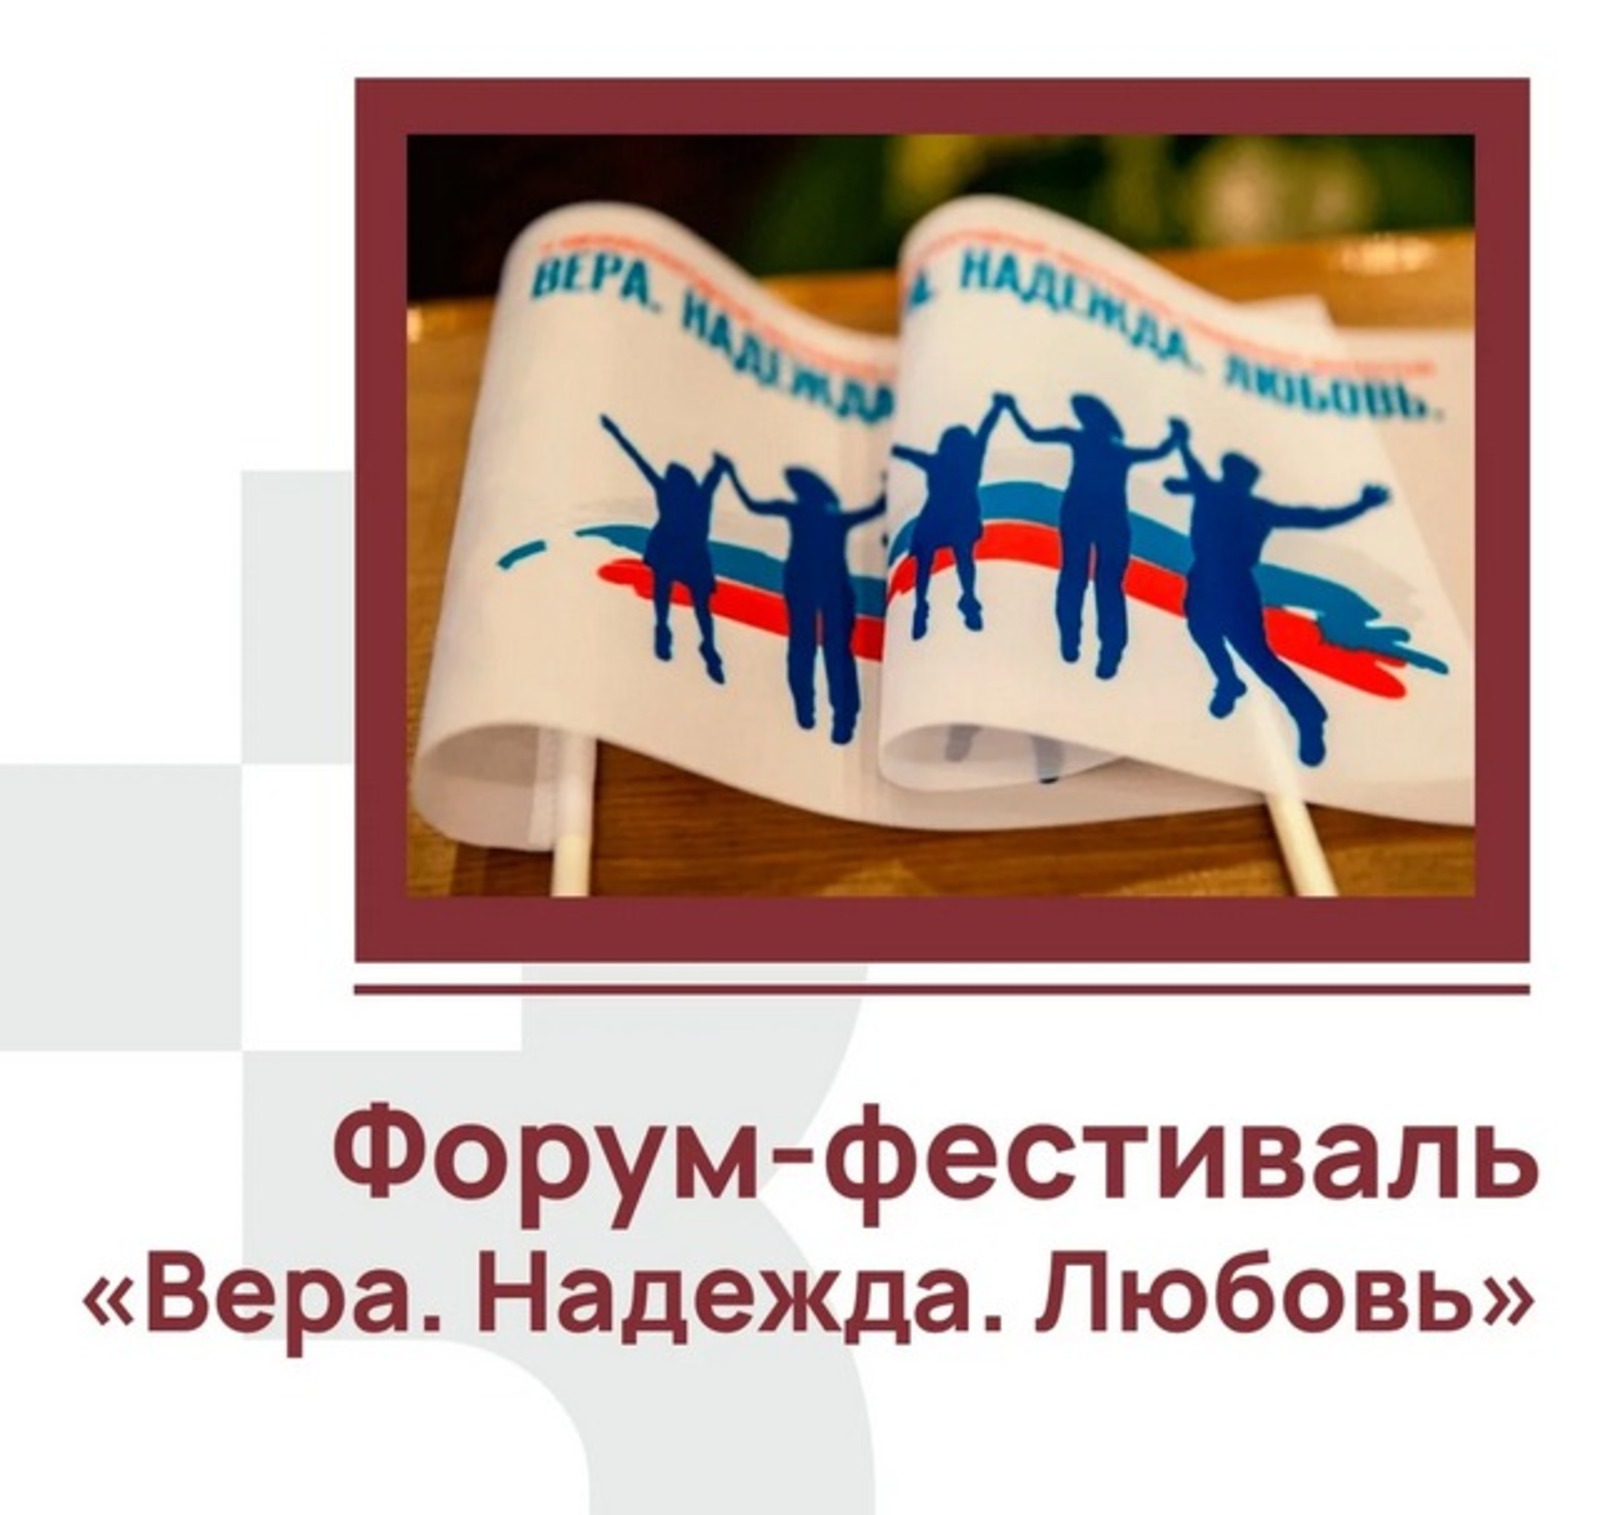 Жителей Башкирии приглашают к участию в форуме-фестивале «Вера. Надежда. Любовь»